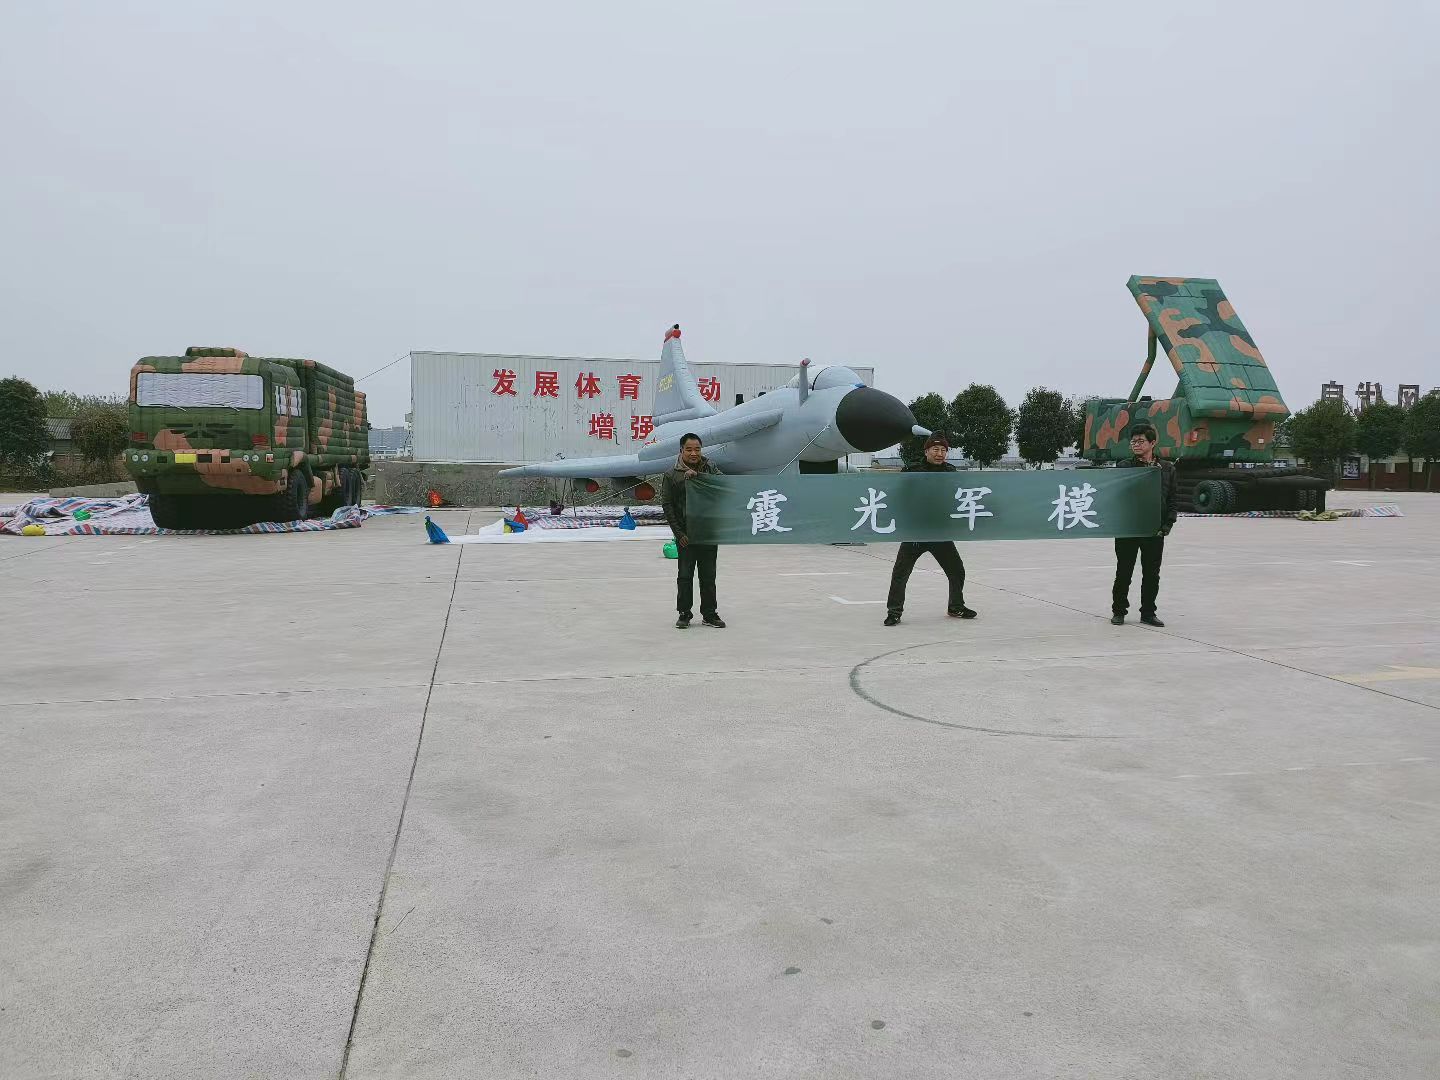 北京专家称引发关注的无人飞艇或为探空气球:主要用于气象观测